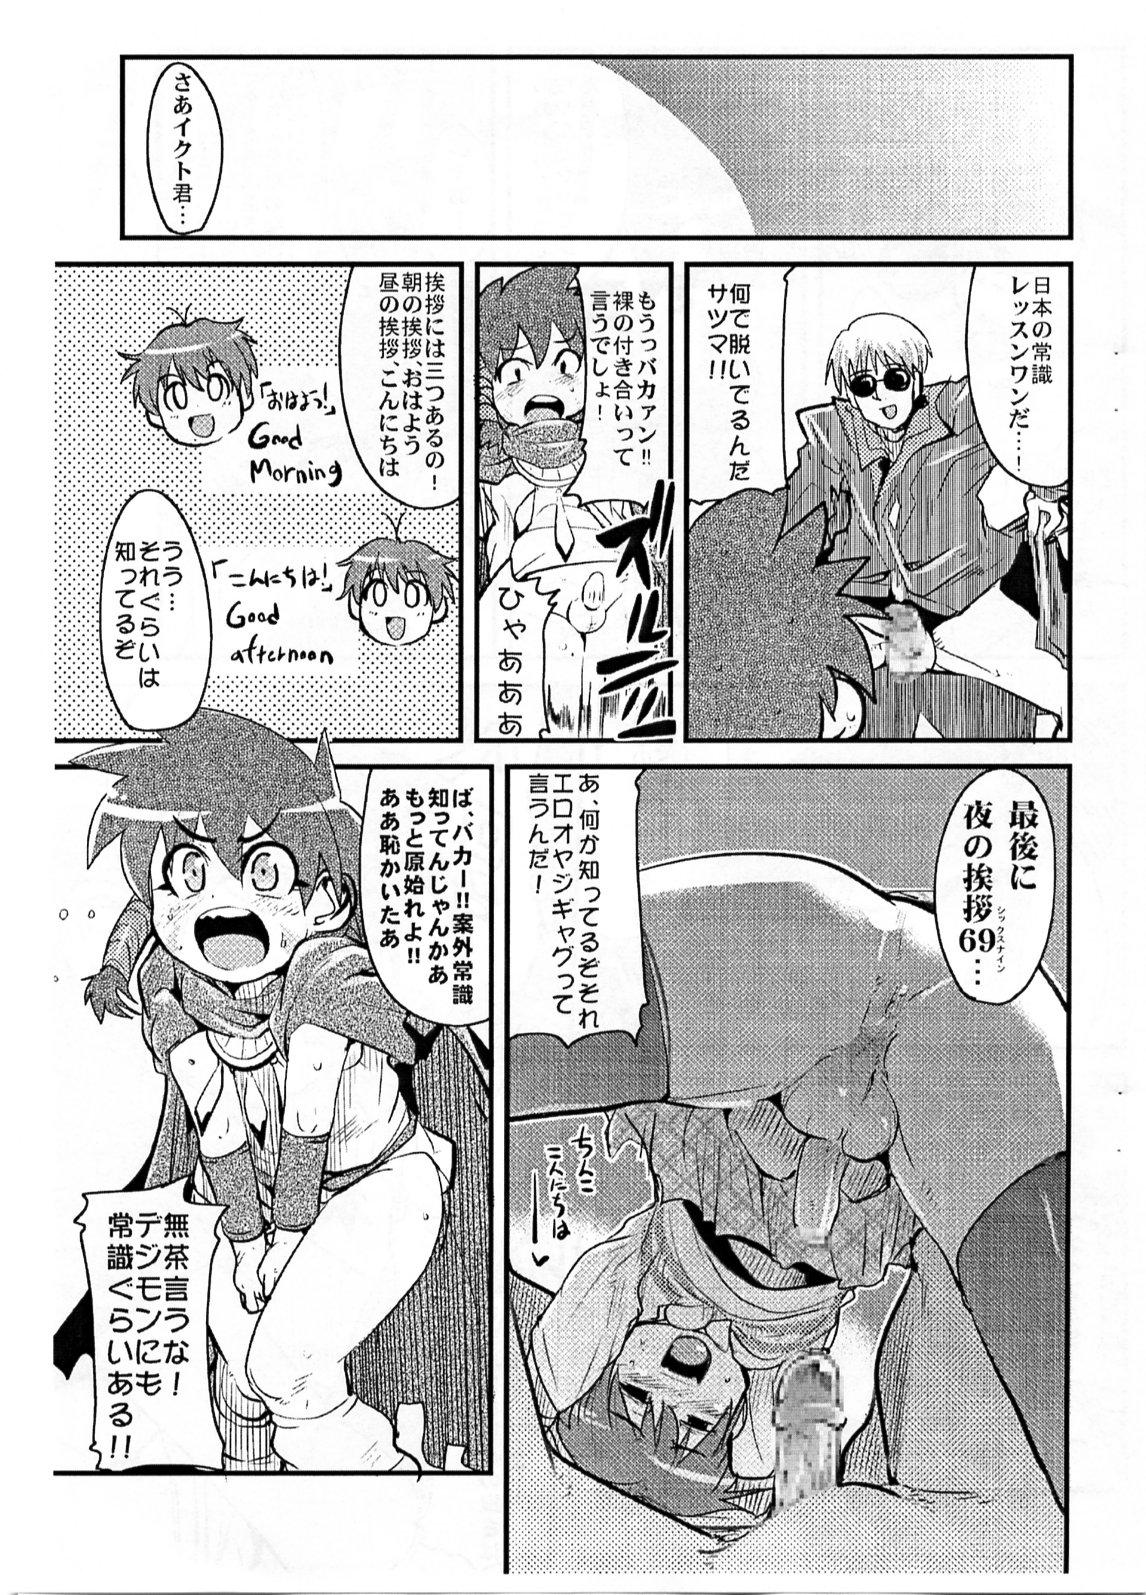 Teen Porn Yaseiji ni iroiro oshieru hon nano da - Digimon savers Tiny Girl - Page 4